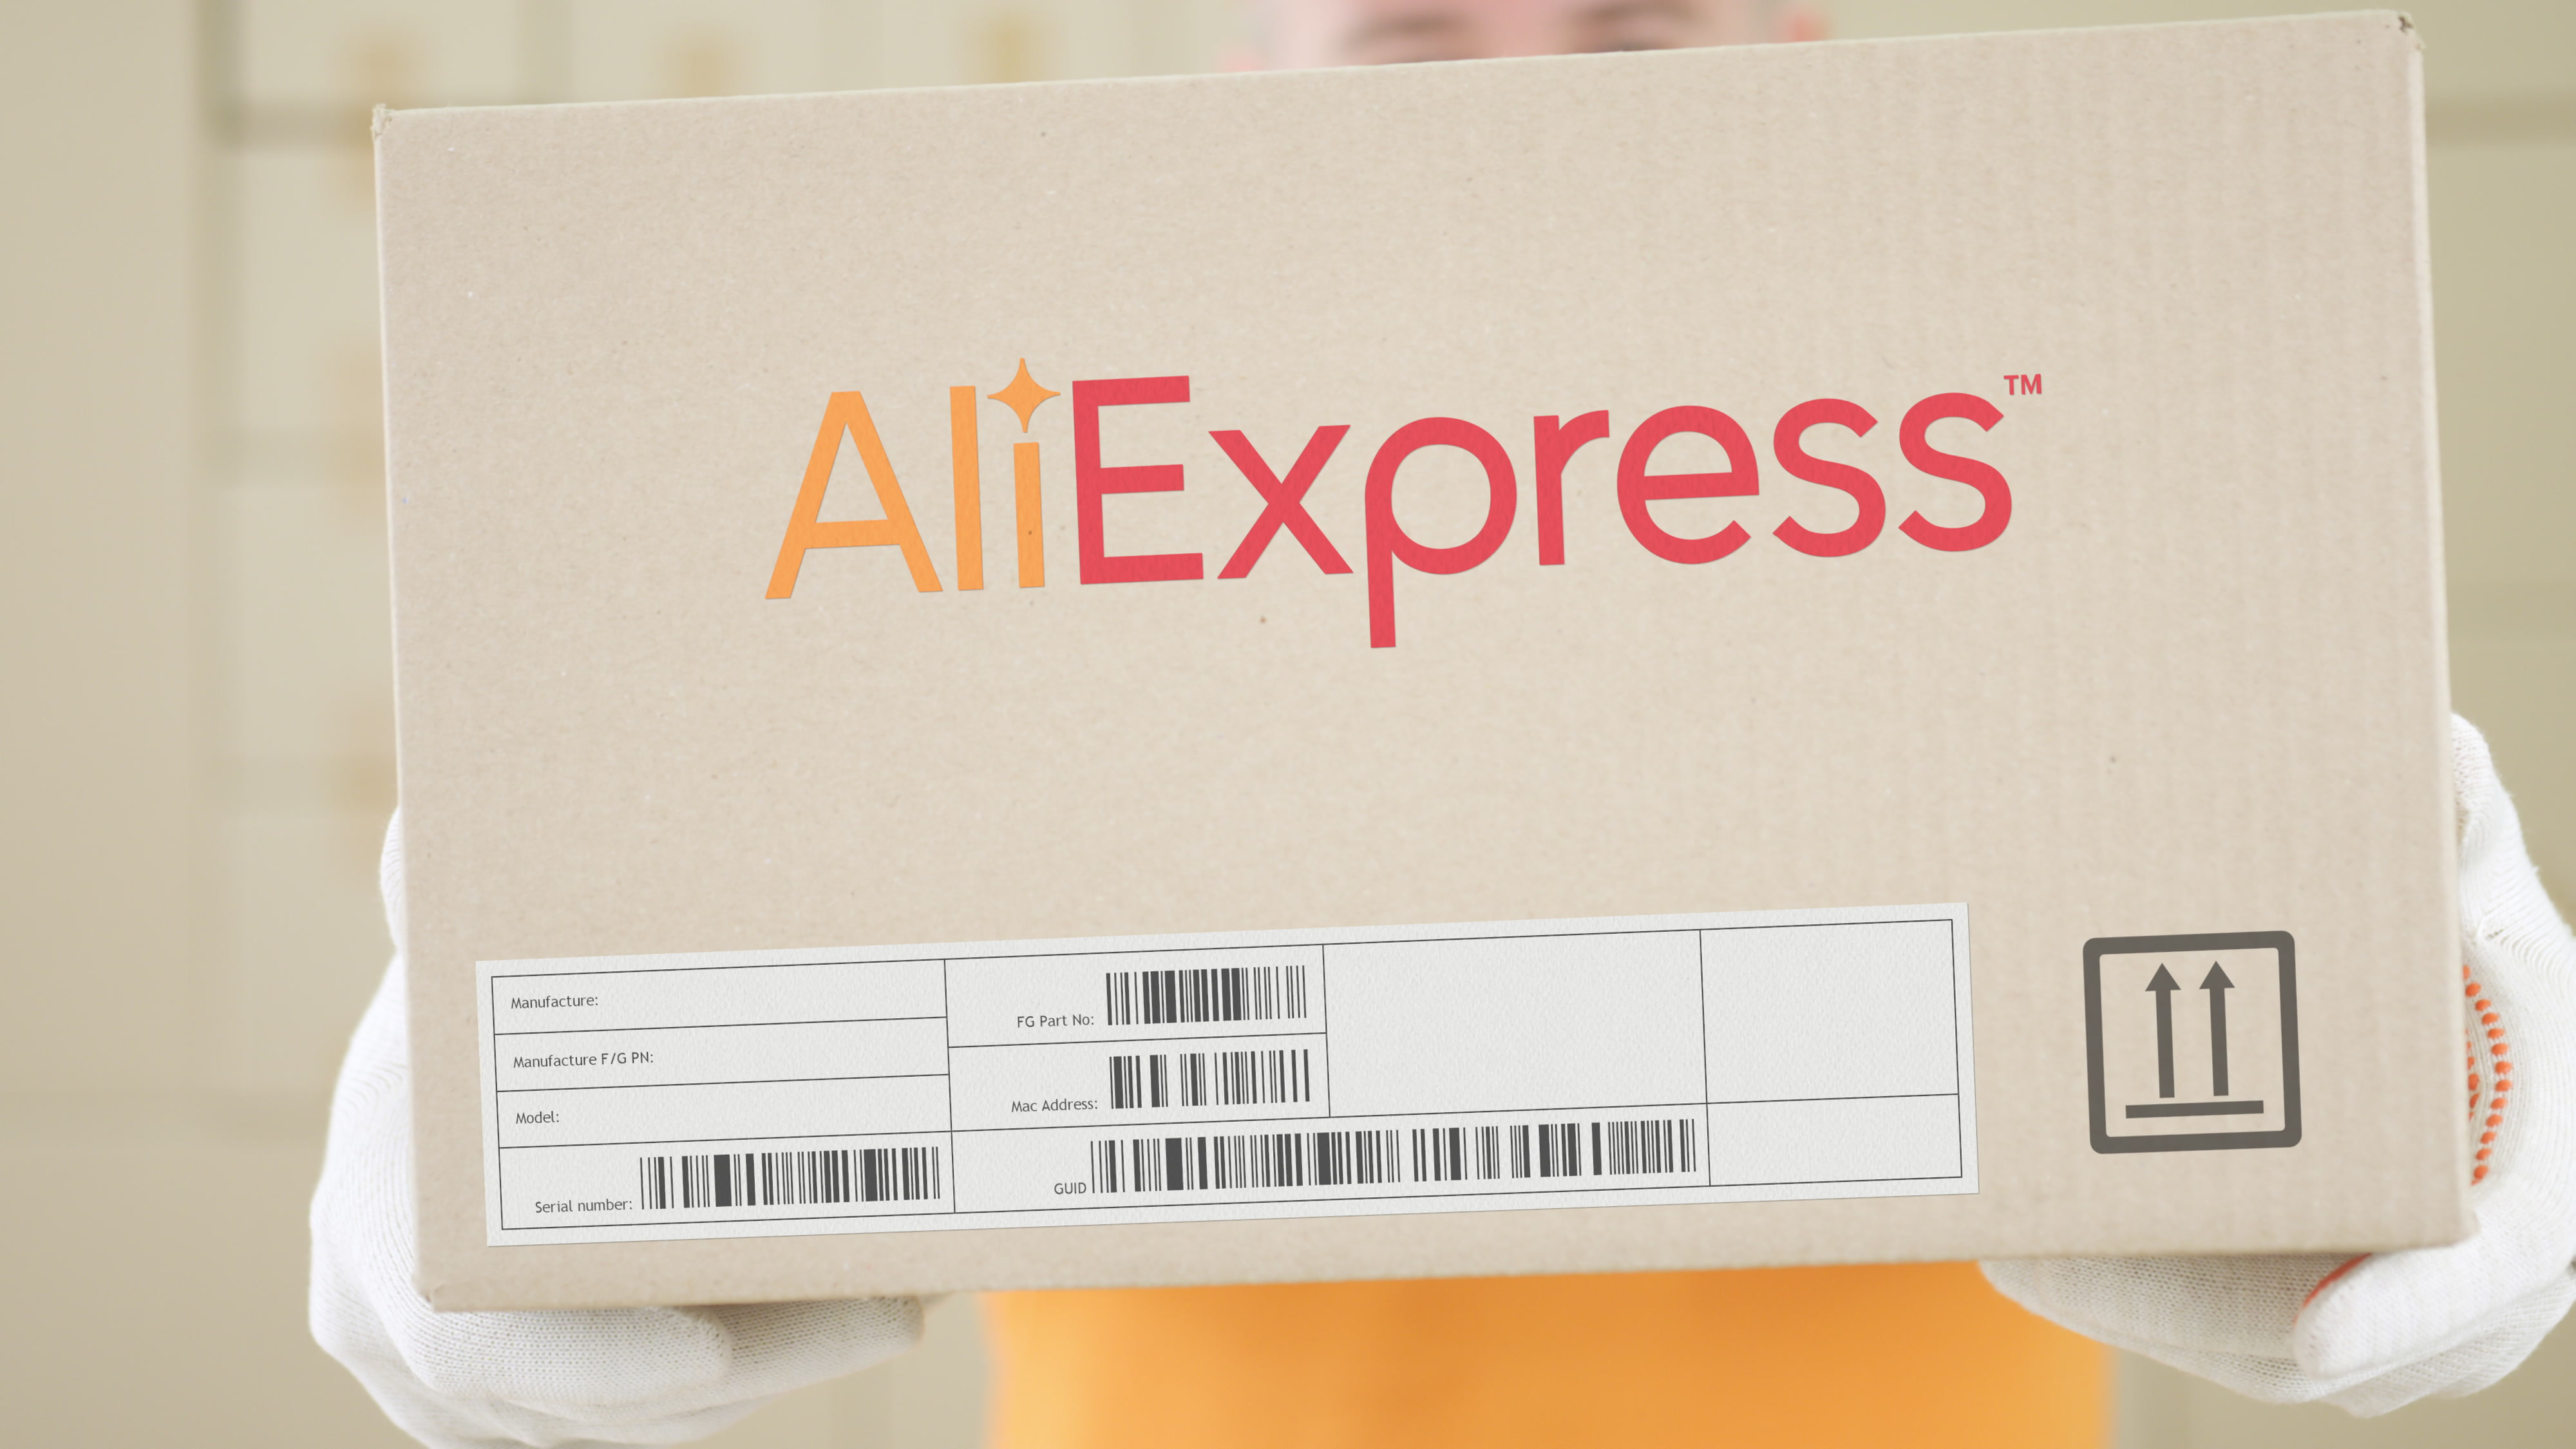 Логистический оператор Alibaba начнёт доставлять посылки с AliExpress стоимостью до $5 бесплатно